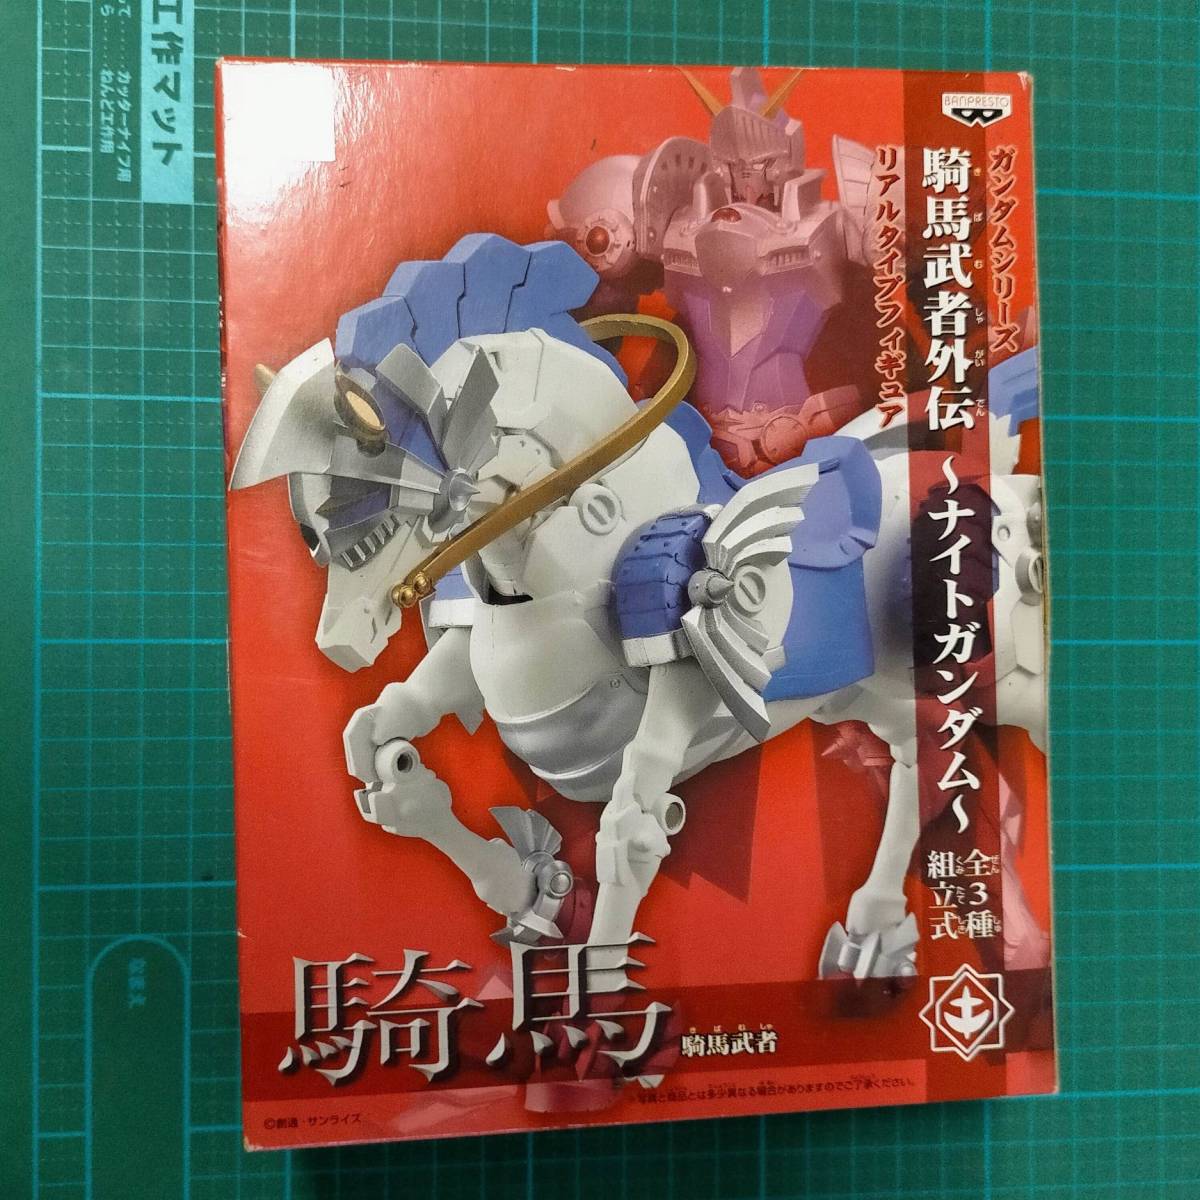 プライズ 景品 非売 騎馬武者外伝 ナイトガンダム 馬 騎馬 武者 ナイト ガンダム 騎士 prize knight gundam Musha horse riding Figure